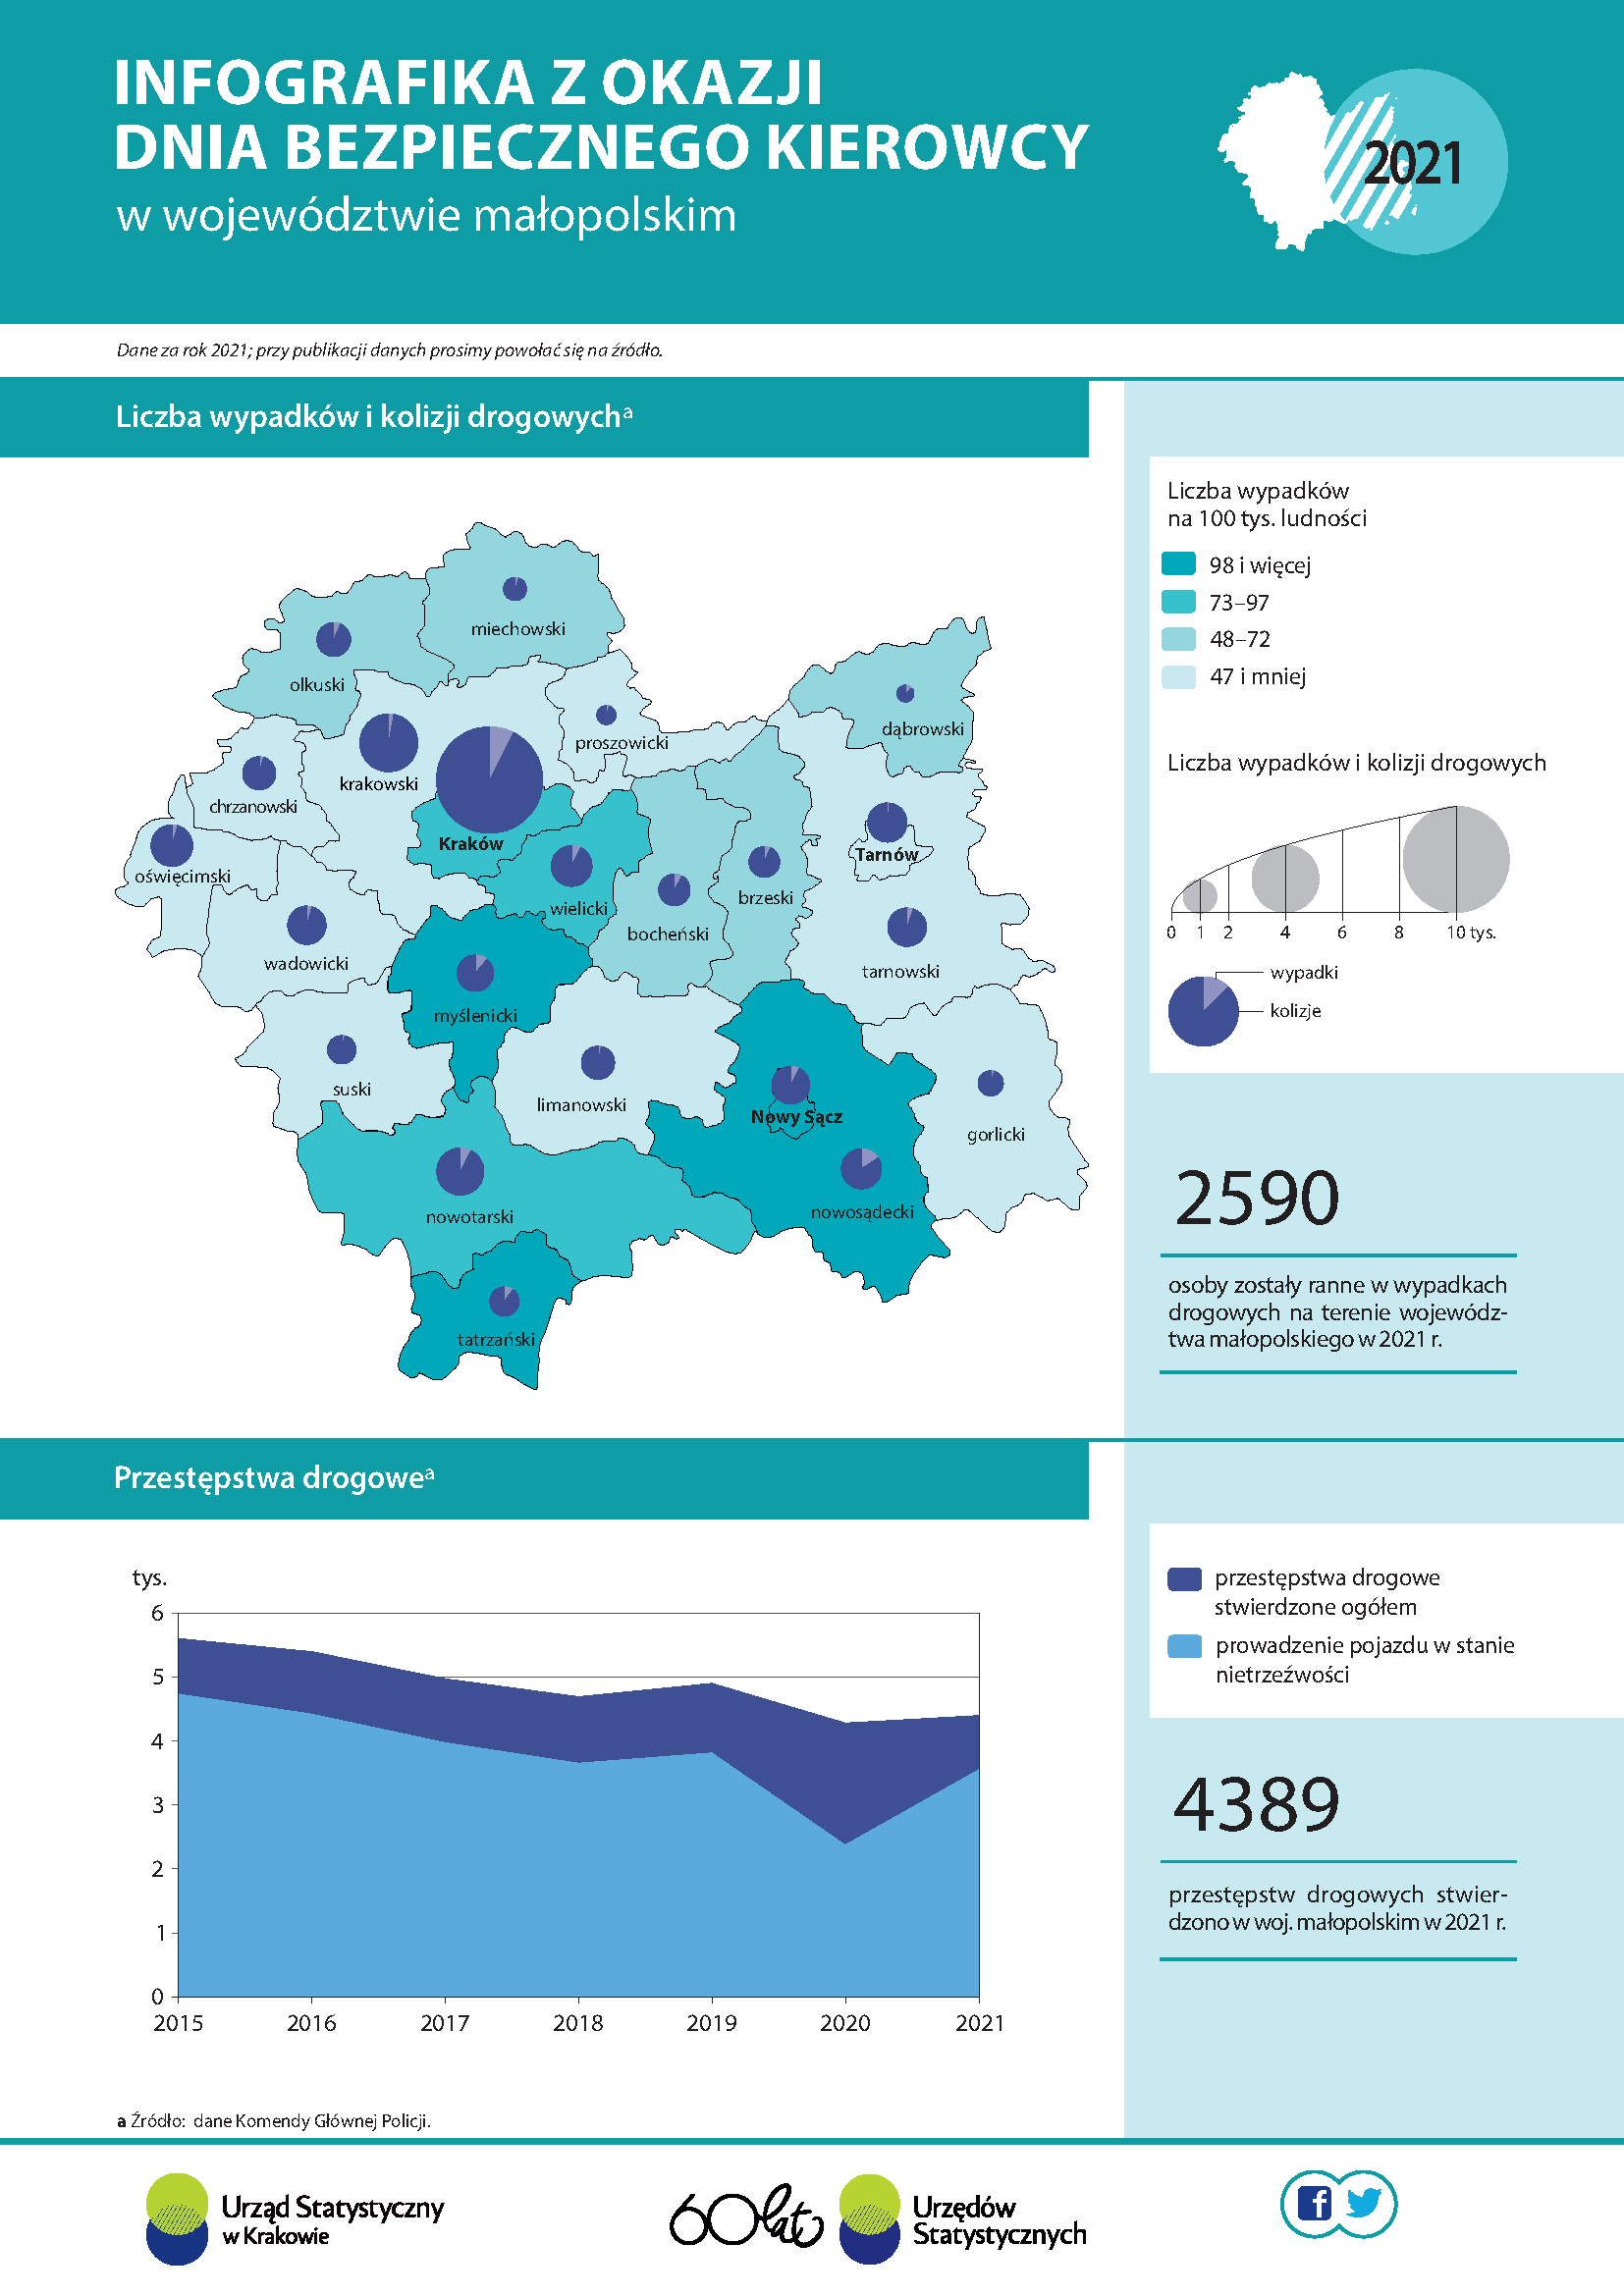 Infografika – Infografika z okazji Dnia Bezpiecznego Kierowcy w województwie małopolskim 2021